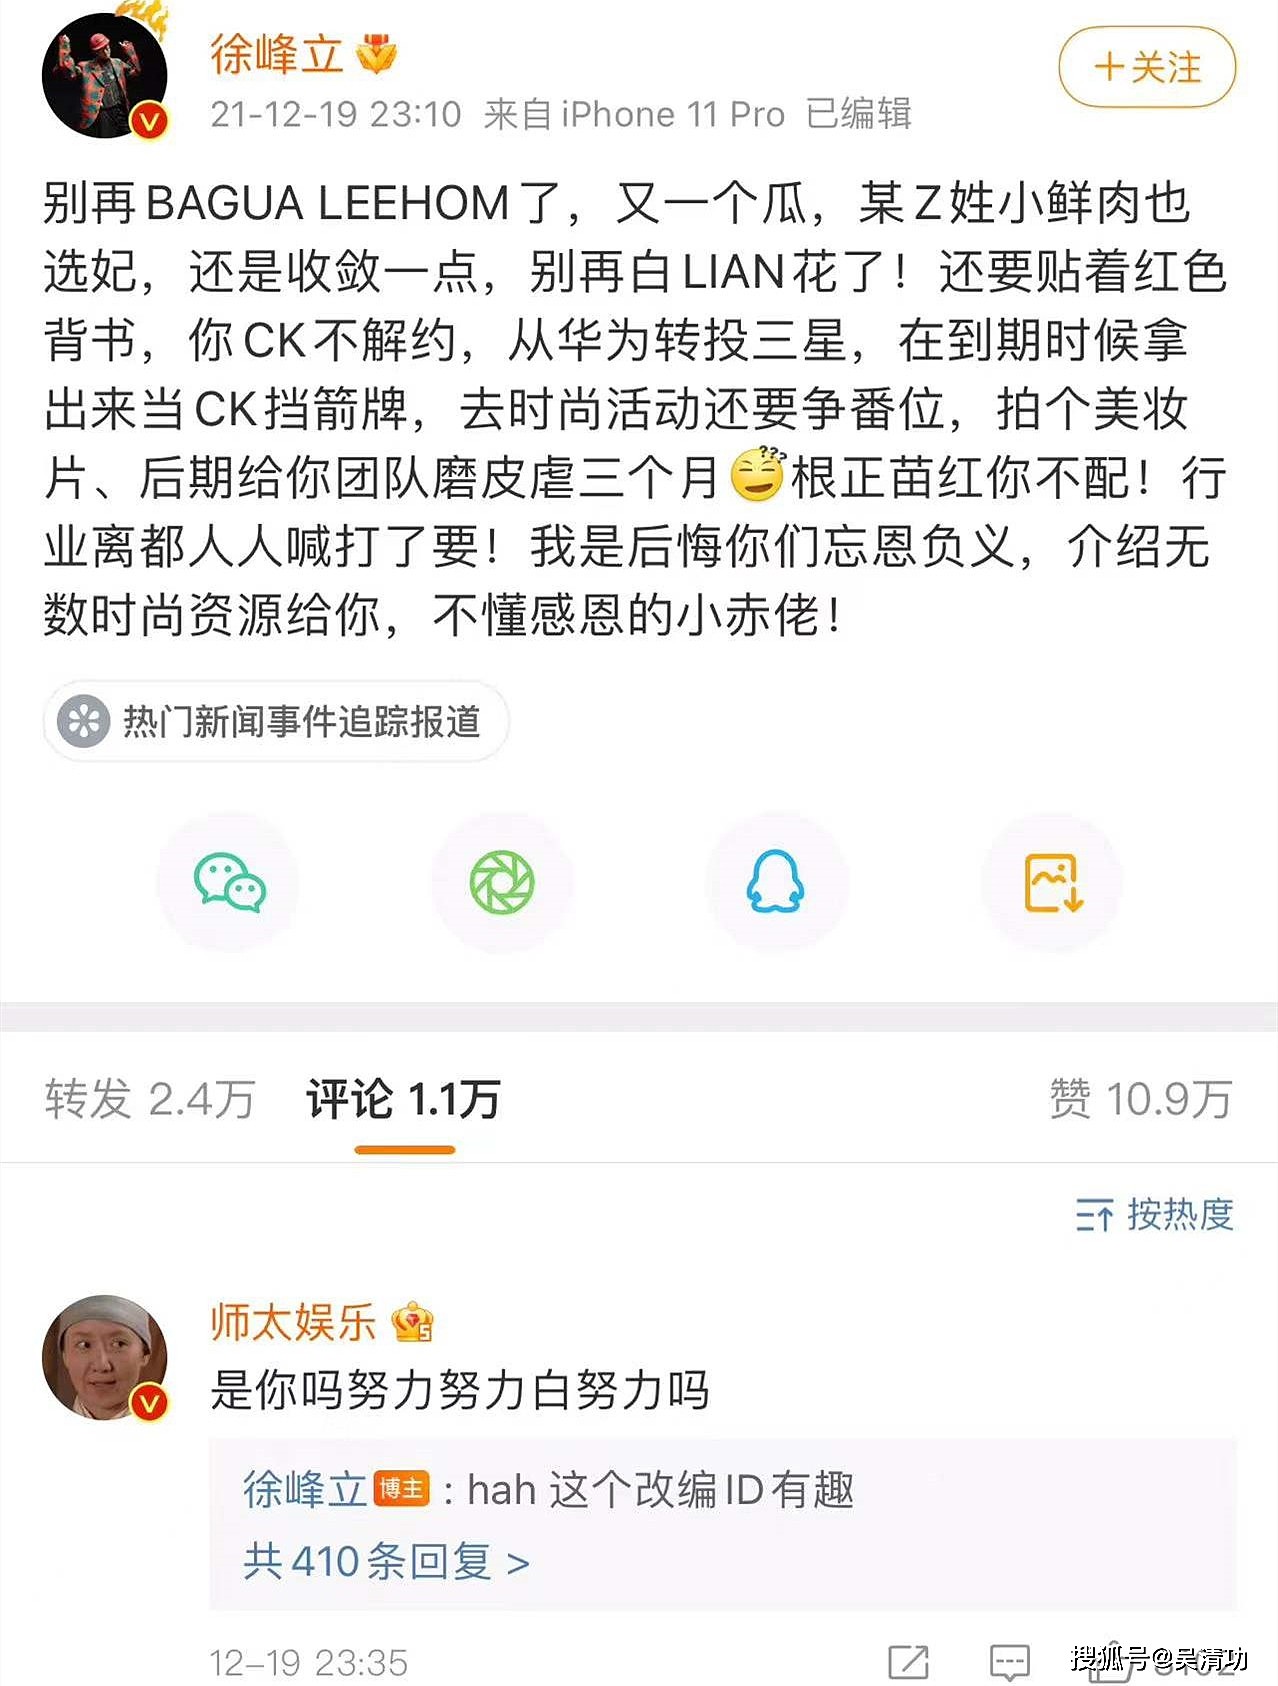 没诚意！造谣“张艺兴选妃”的徐峰立道歉了，却没有删除不实微博 - 4